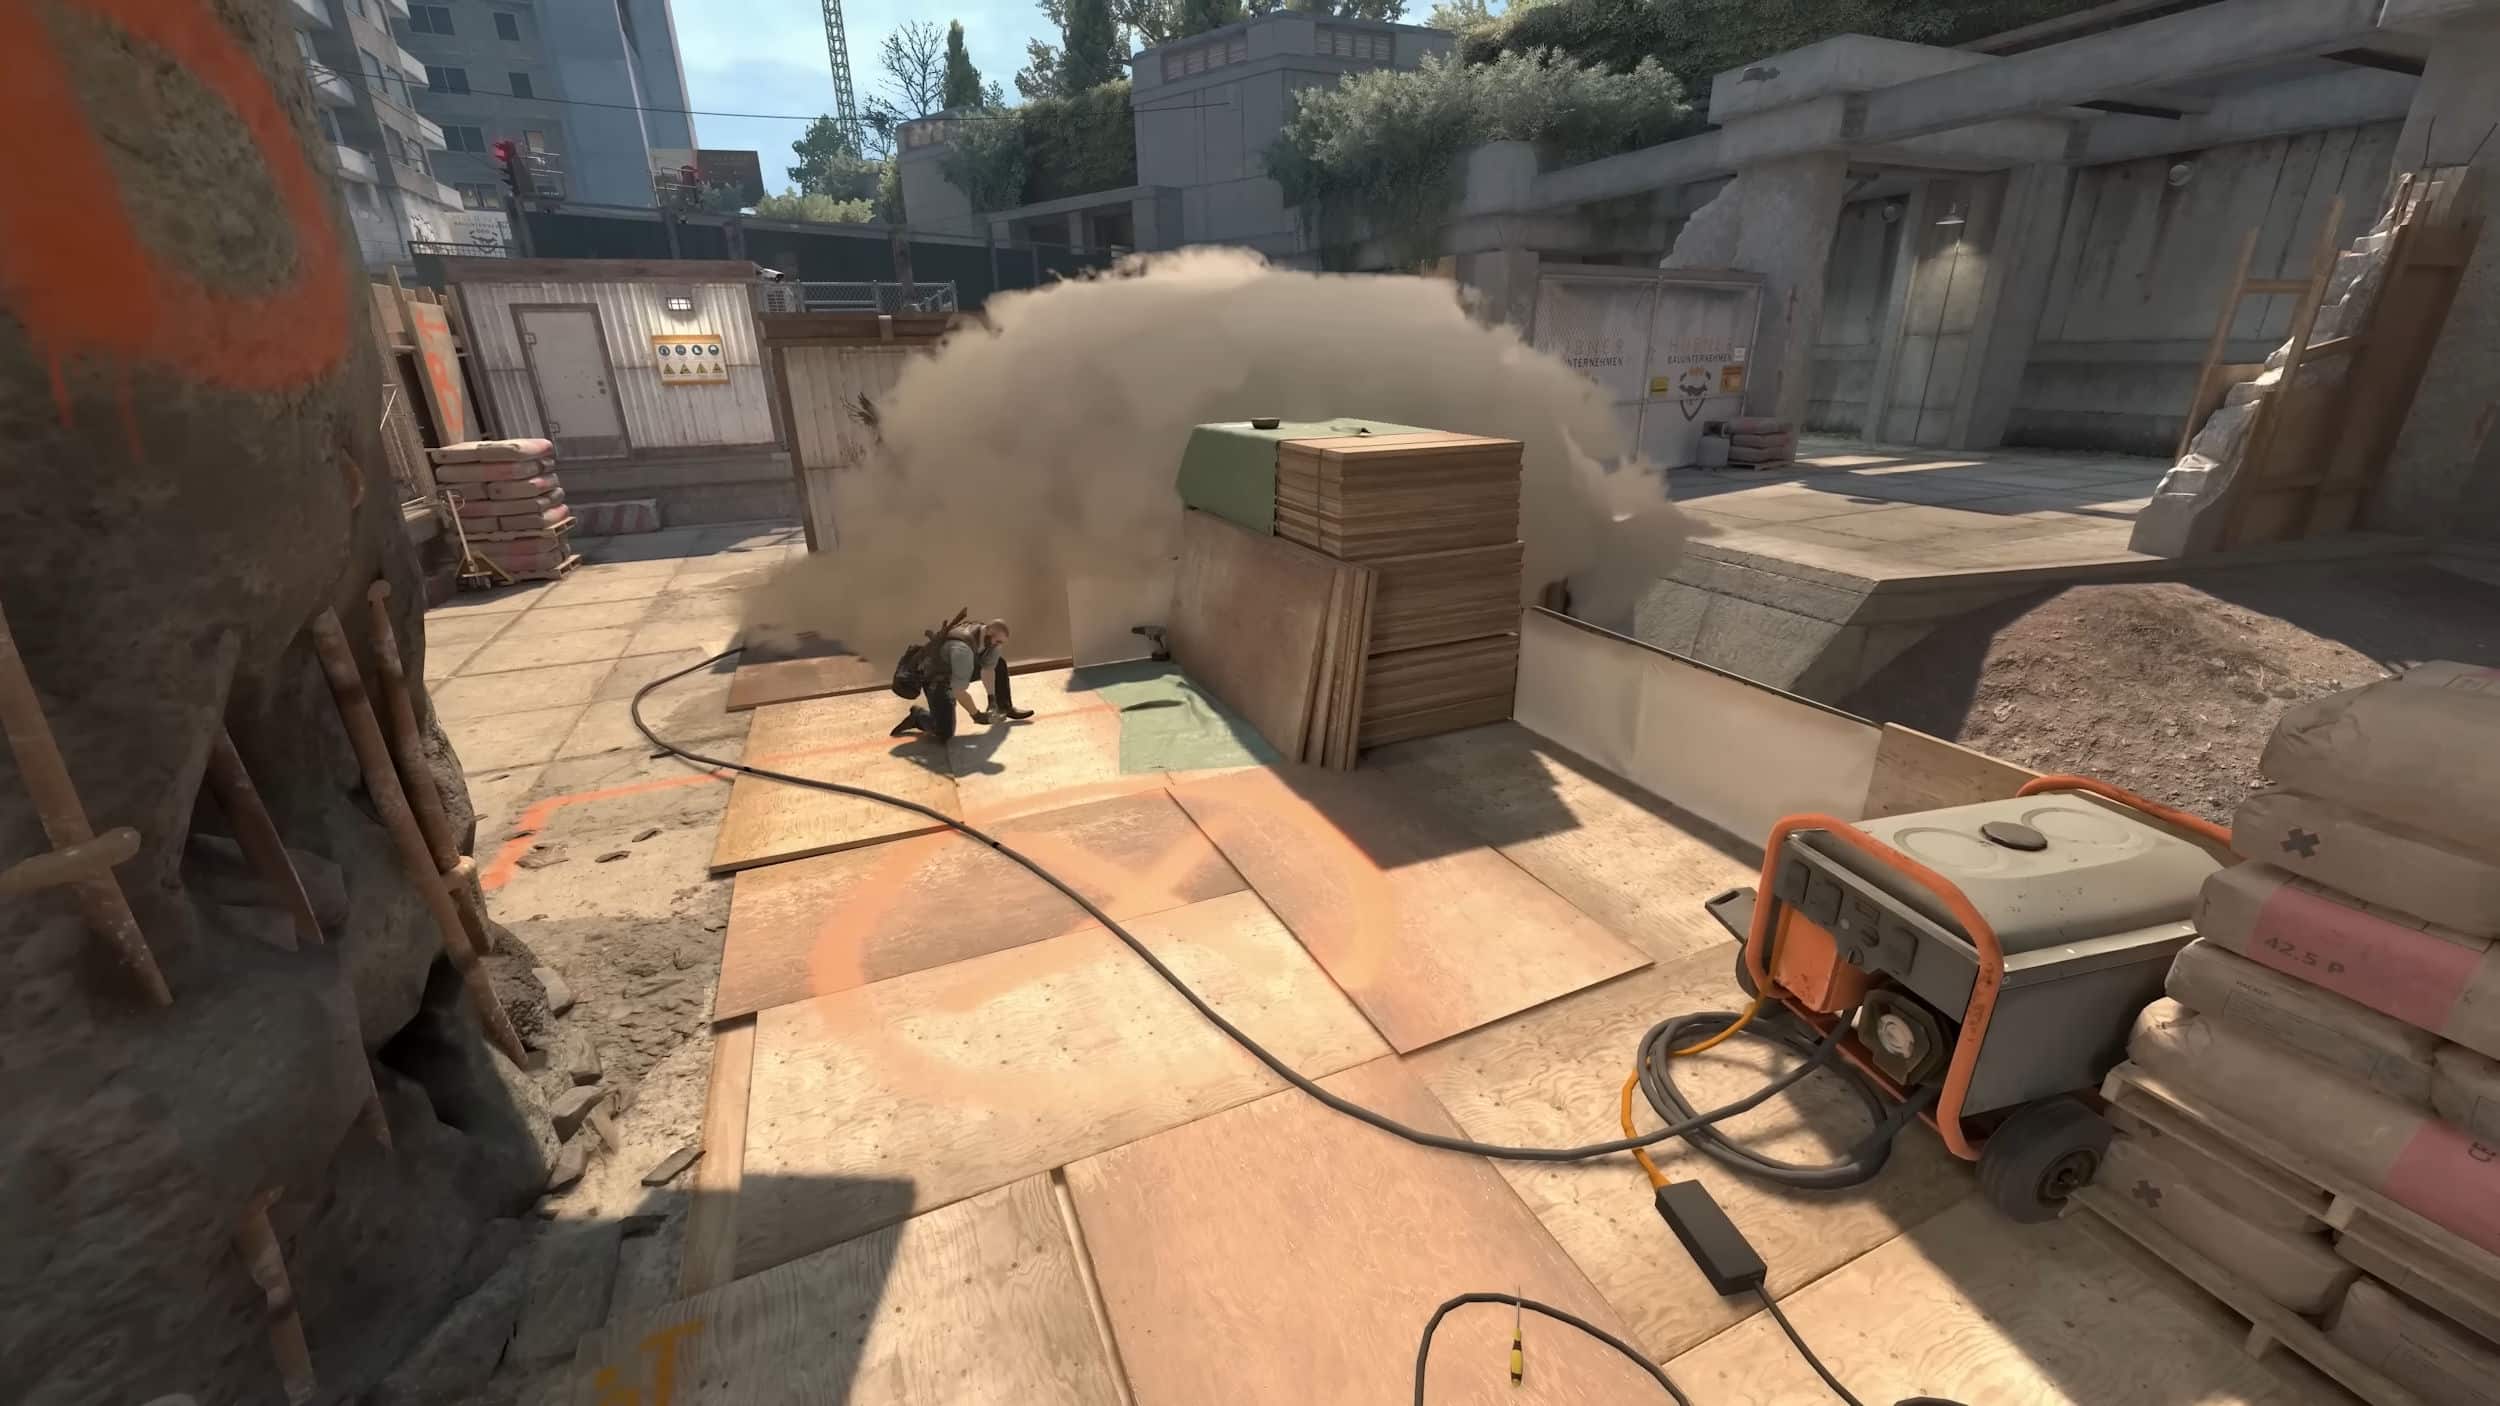 Counter-Strike 2 chegará aos consoles? Valve tem a última palavra